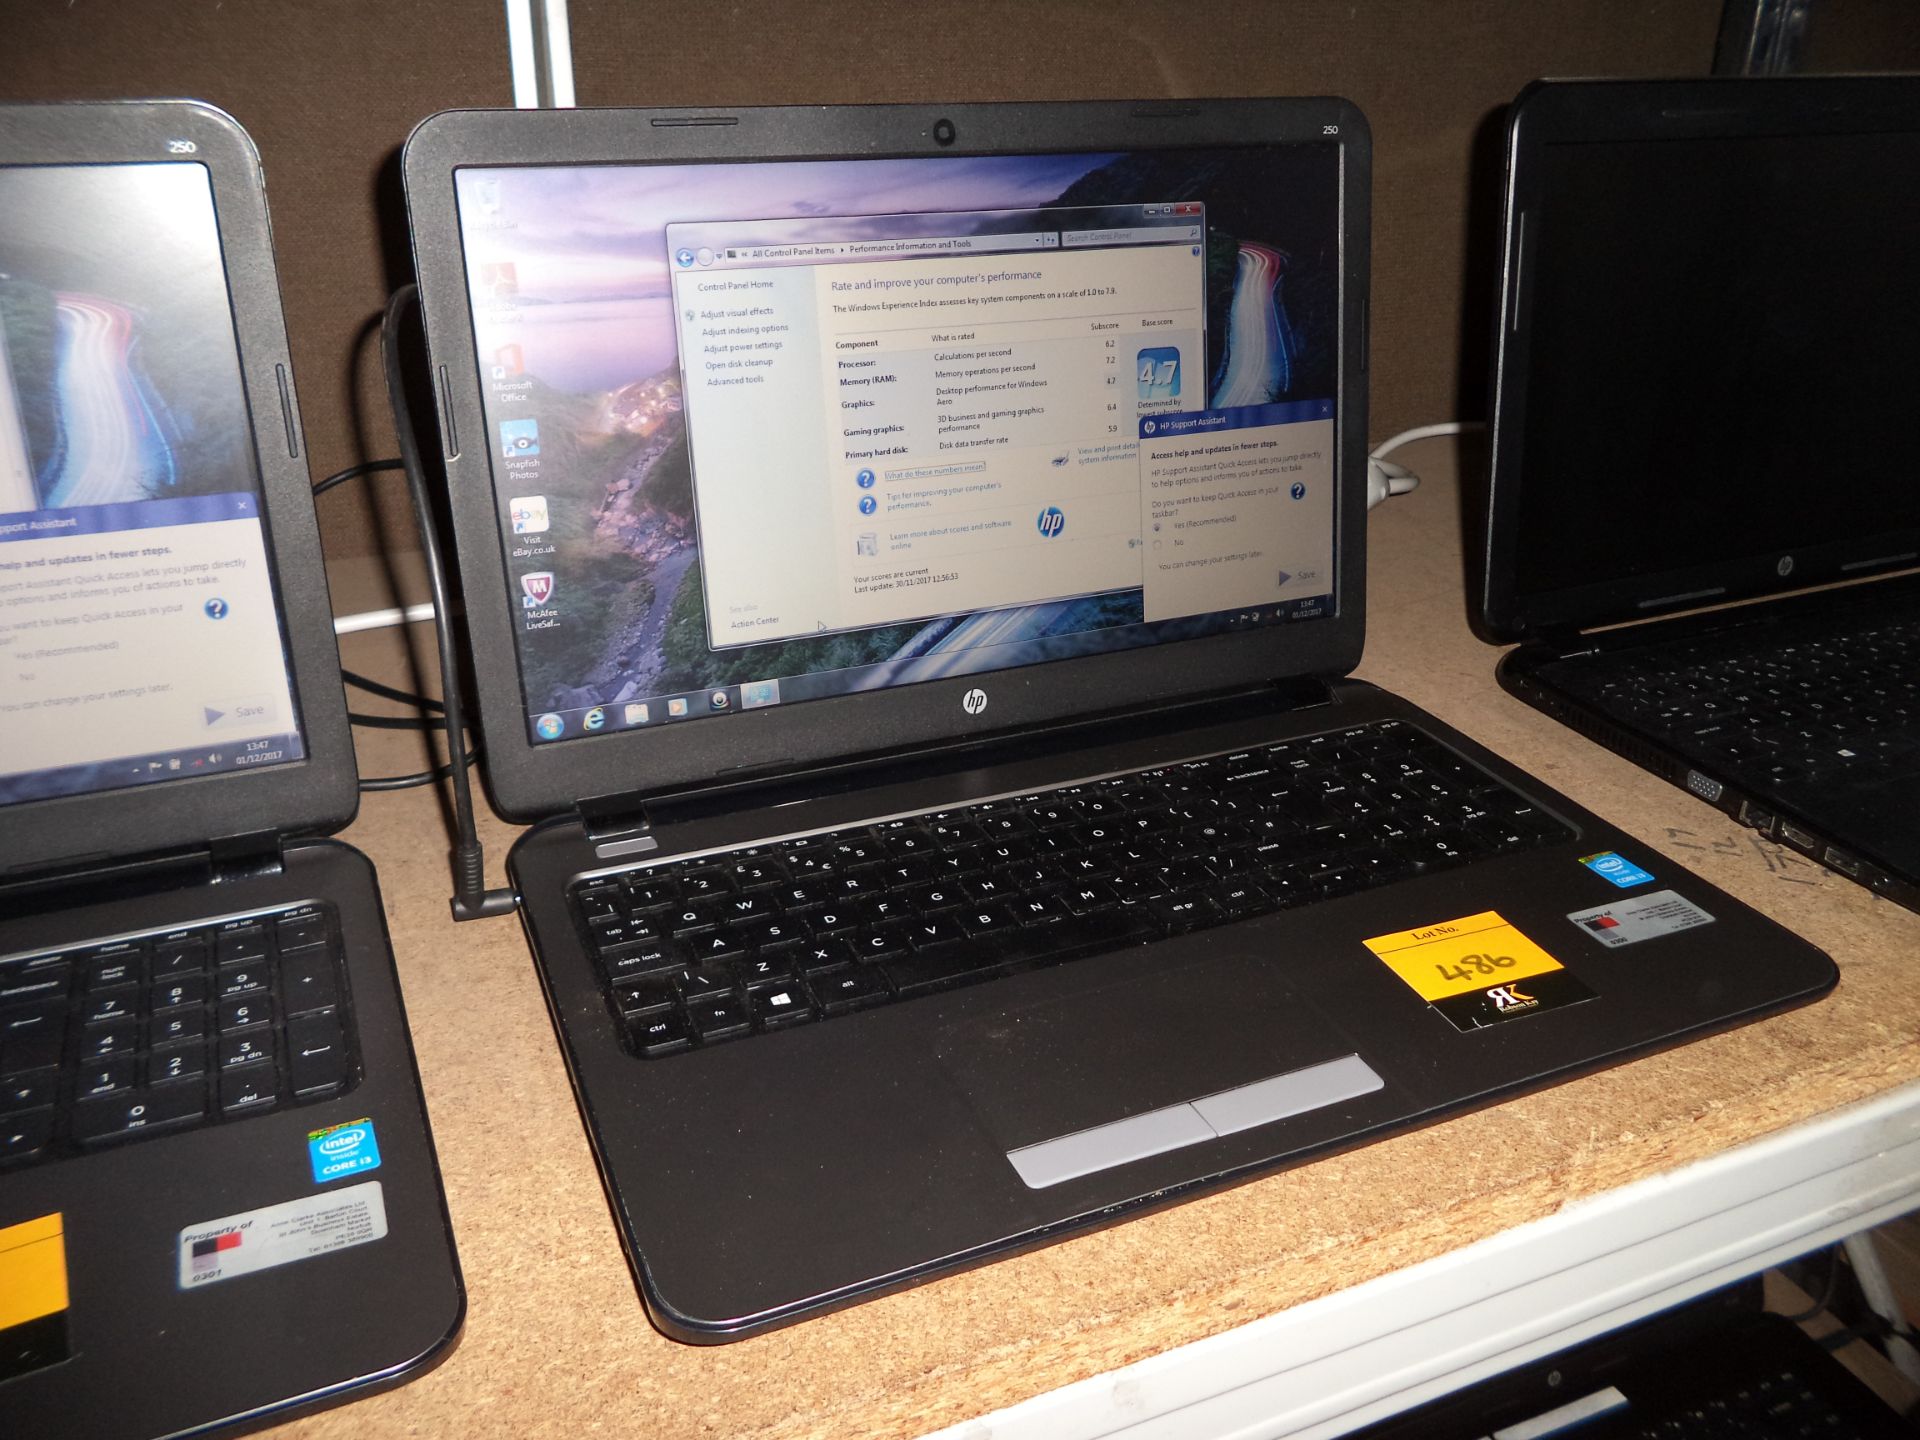 HP ProBook 250 G3 notebook computer with 15.6" widescreen display & built-in webcam, core i3-4005U